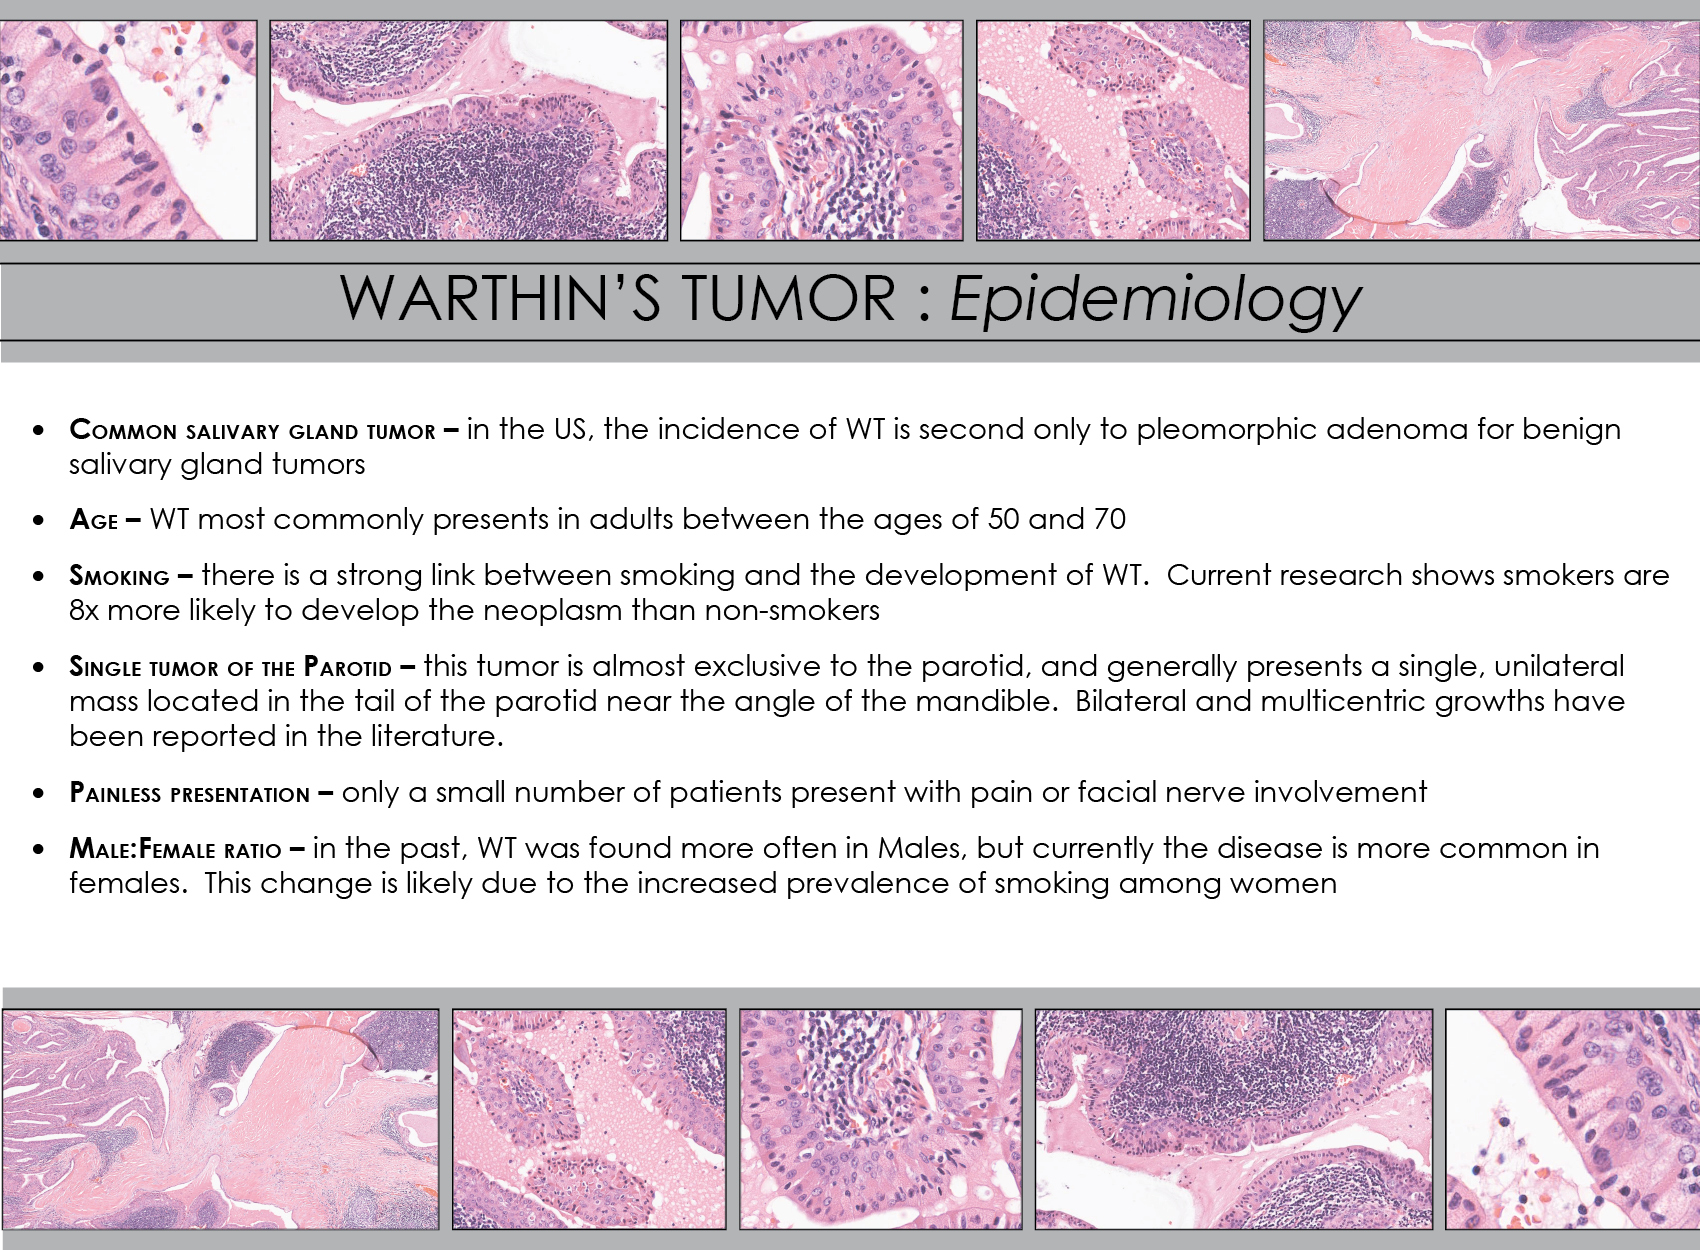 Tumor De Warthin